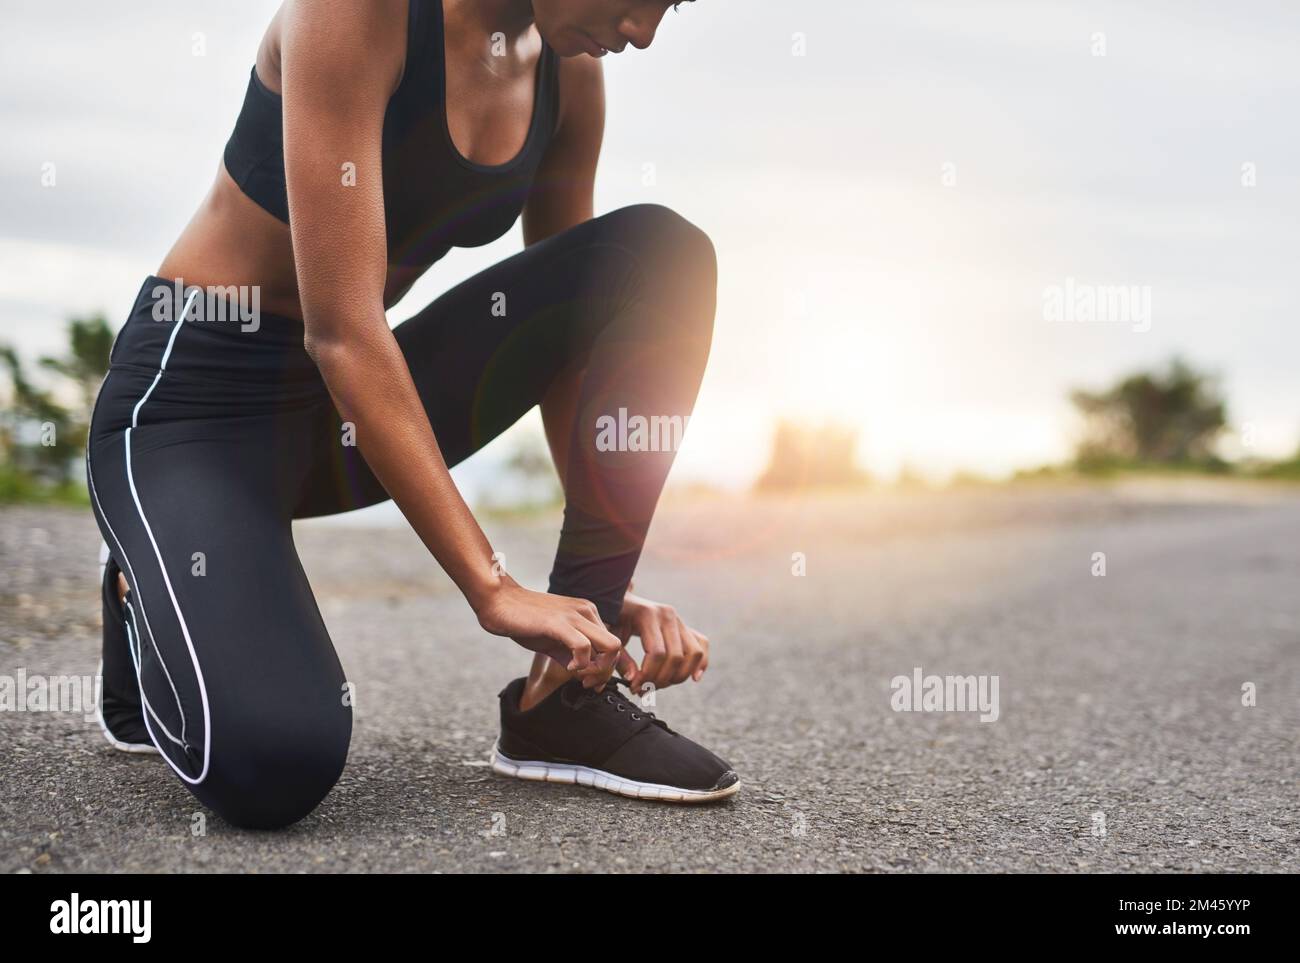 Lo lograrás hasta el final Primer plano de una mujer deportiva atando sus cordones mientras hace ejercicio al aire libre. Foto de stock